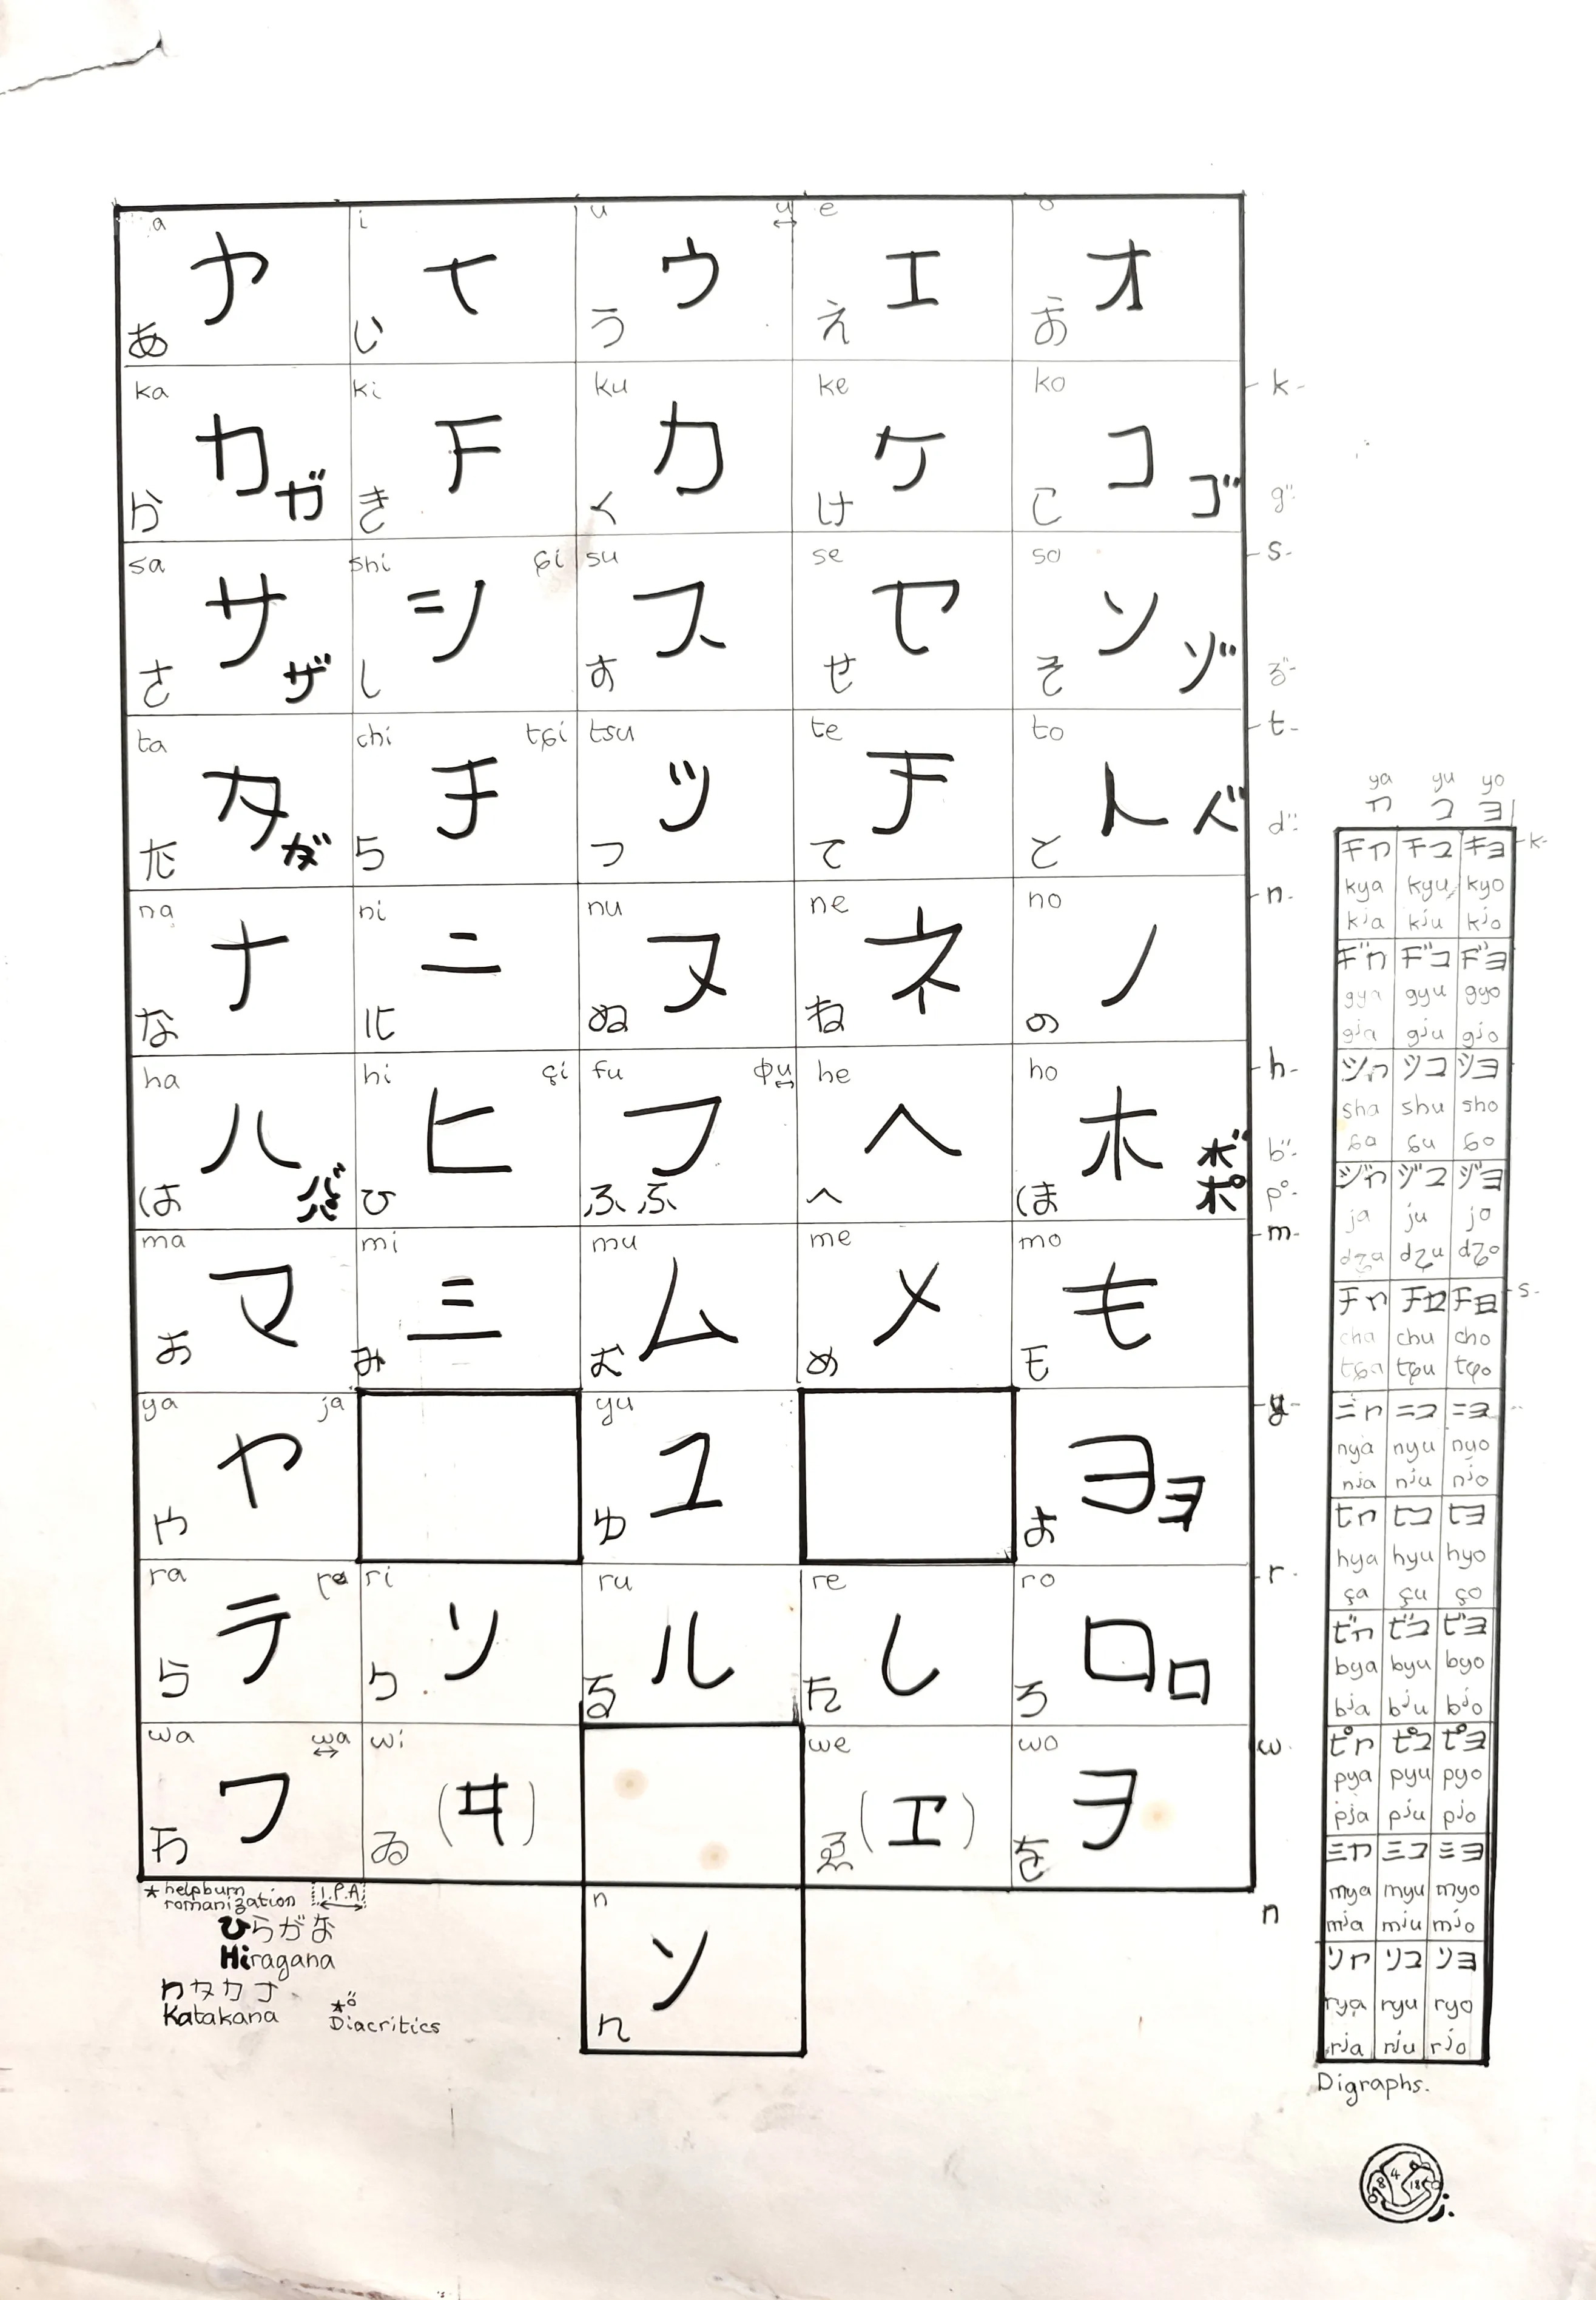 le zoli dessin « Hiragana et Katakana » que j'ai bilouté le 8 avril 2018